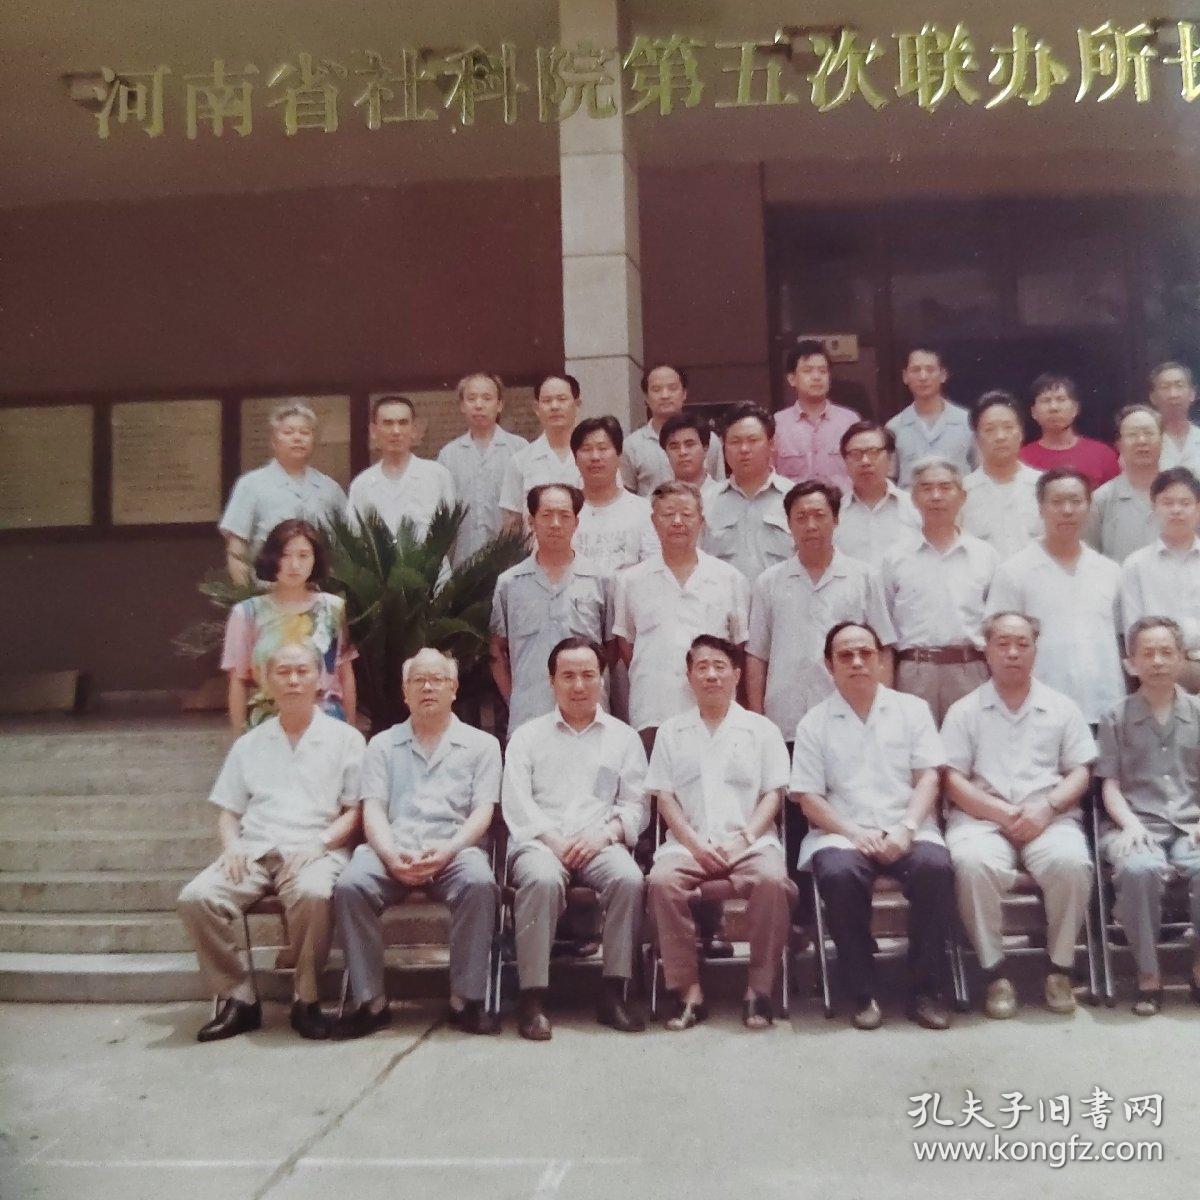 河南省社科院第五次联办所长联席会合影留念。